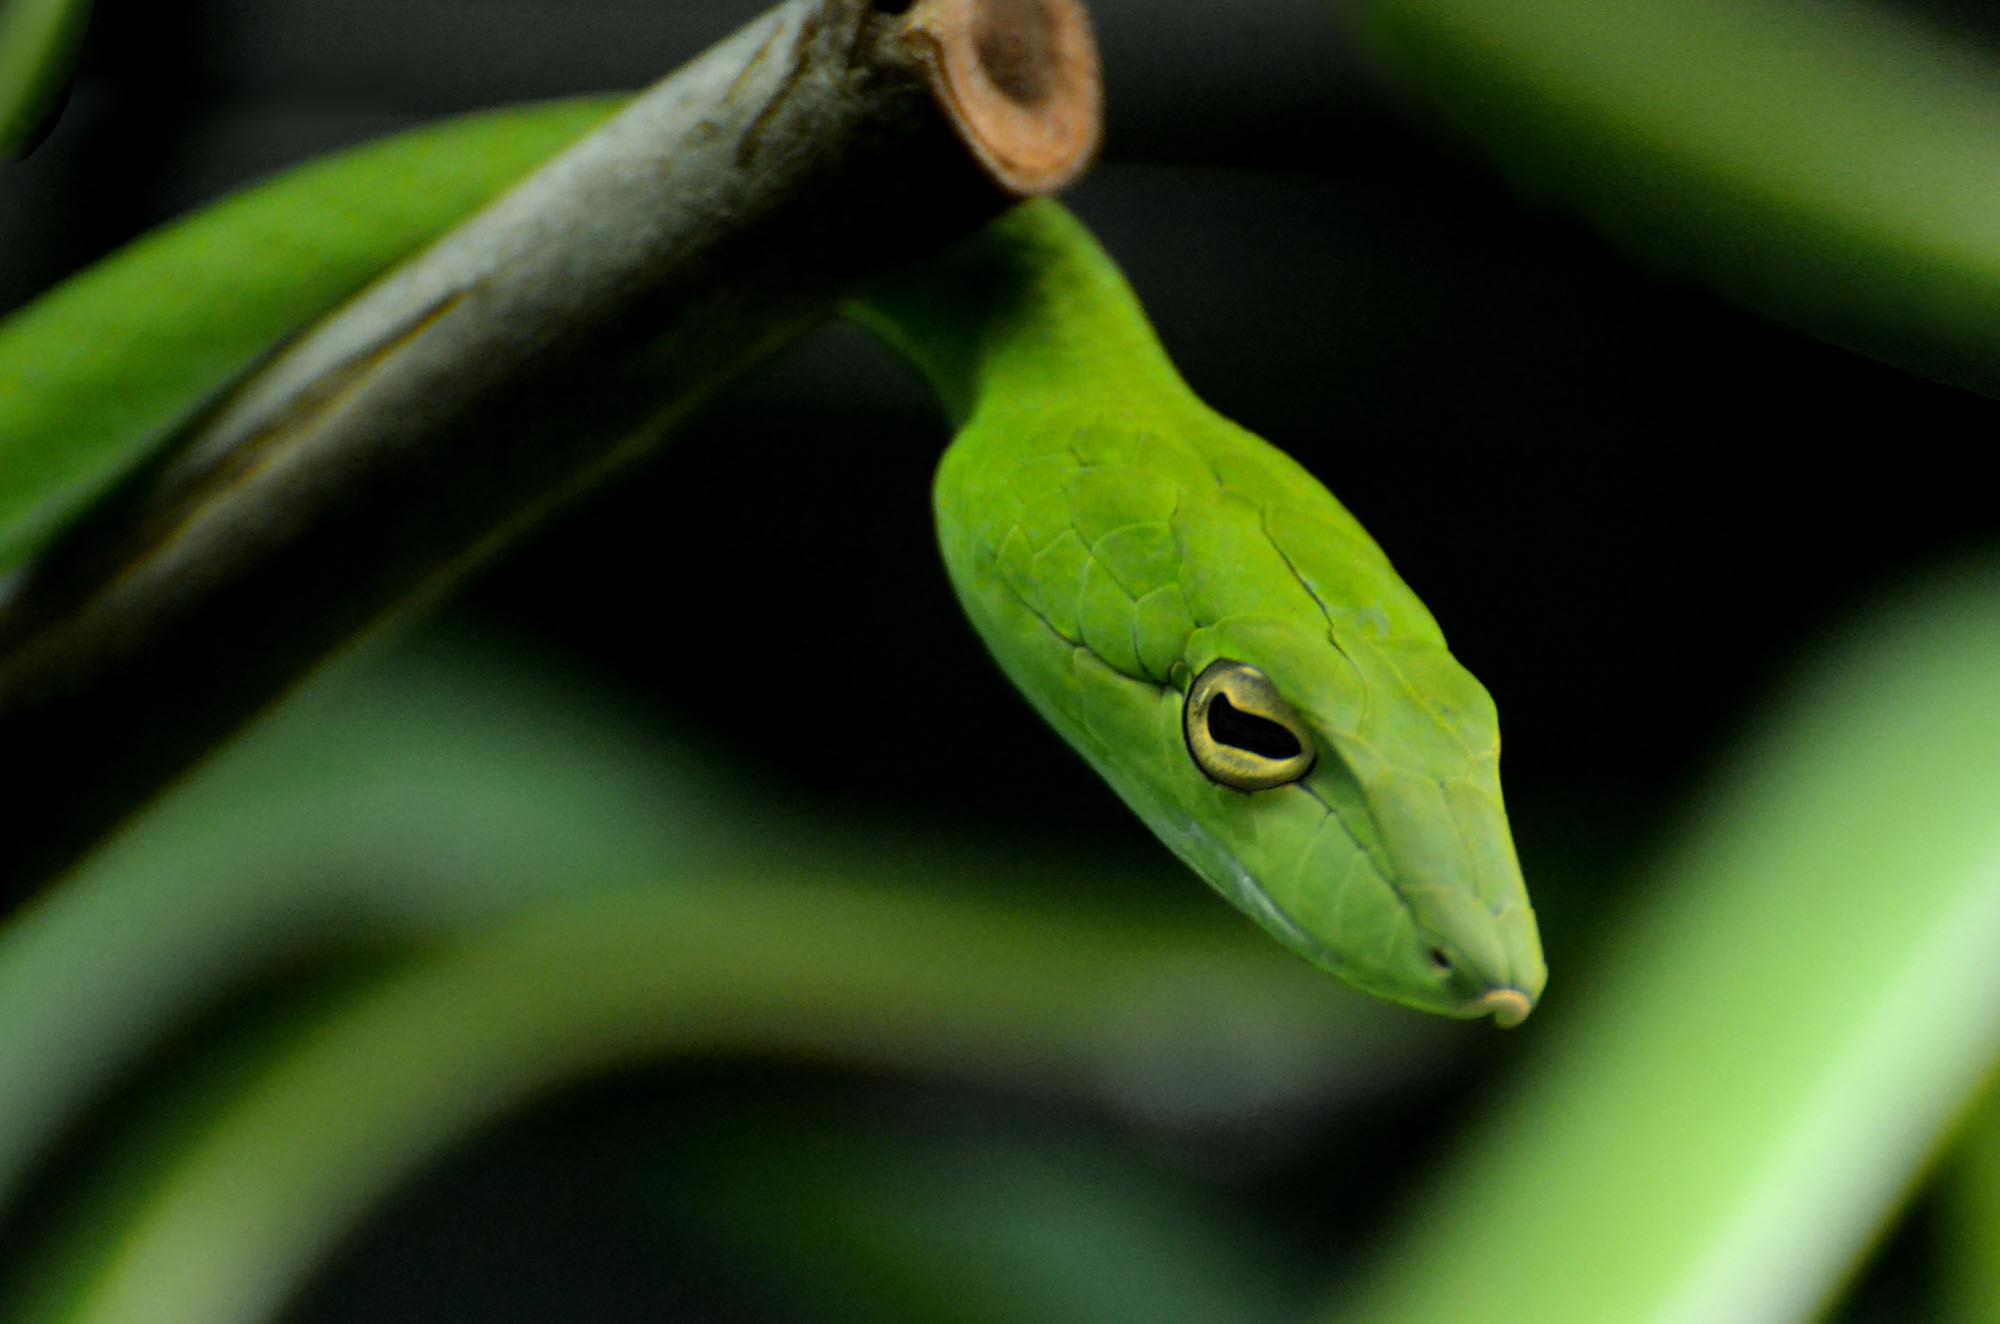 12 Striking Amazon Rainforest Snakes • I Heart Brazil